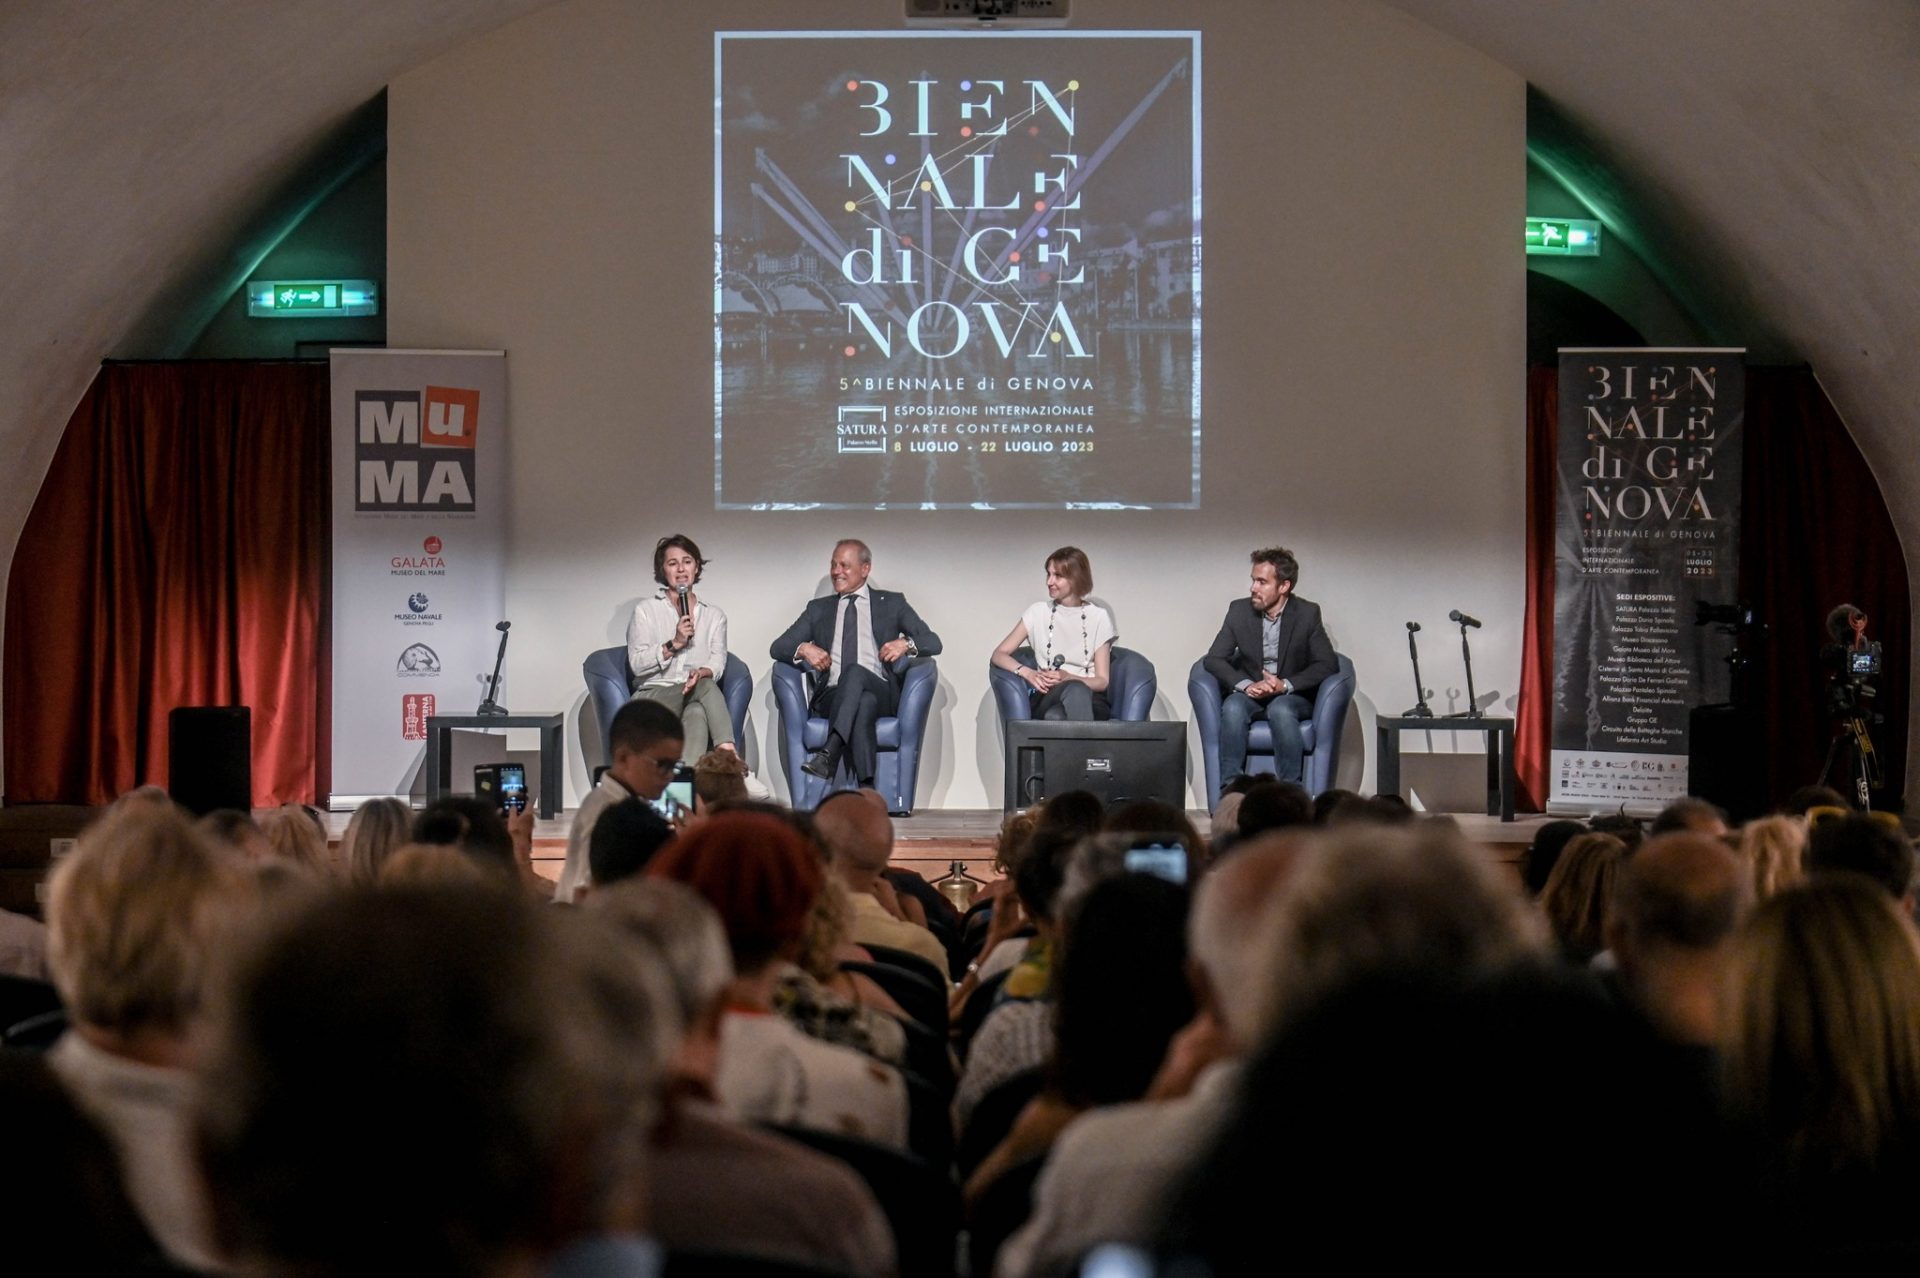 Si è conclusa ieri, sabato 22 luglio, la 5^ Biennale di Genova, che conferma l’attenzione crescente della città verso l’arte contemporanea.